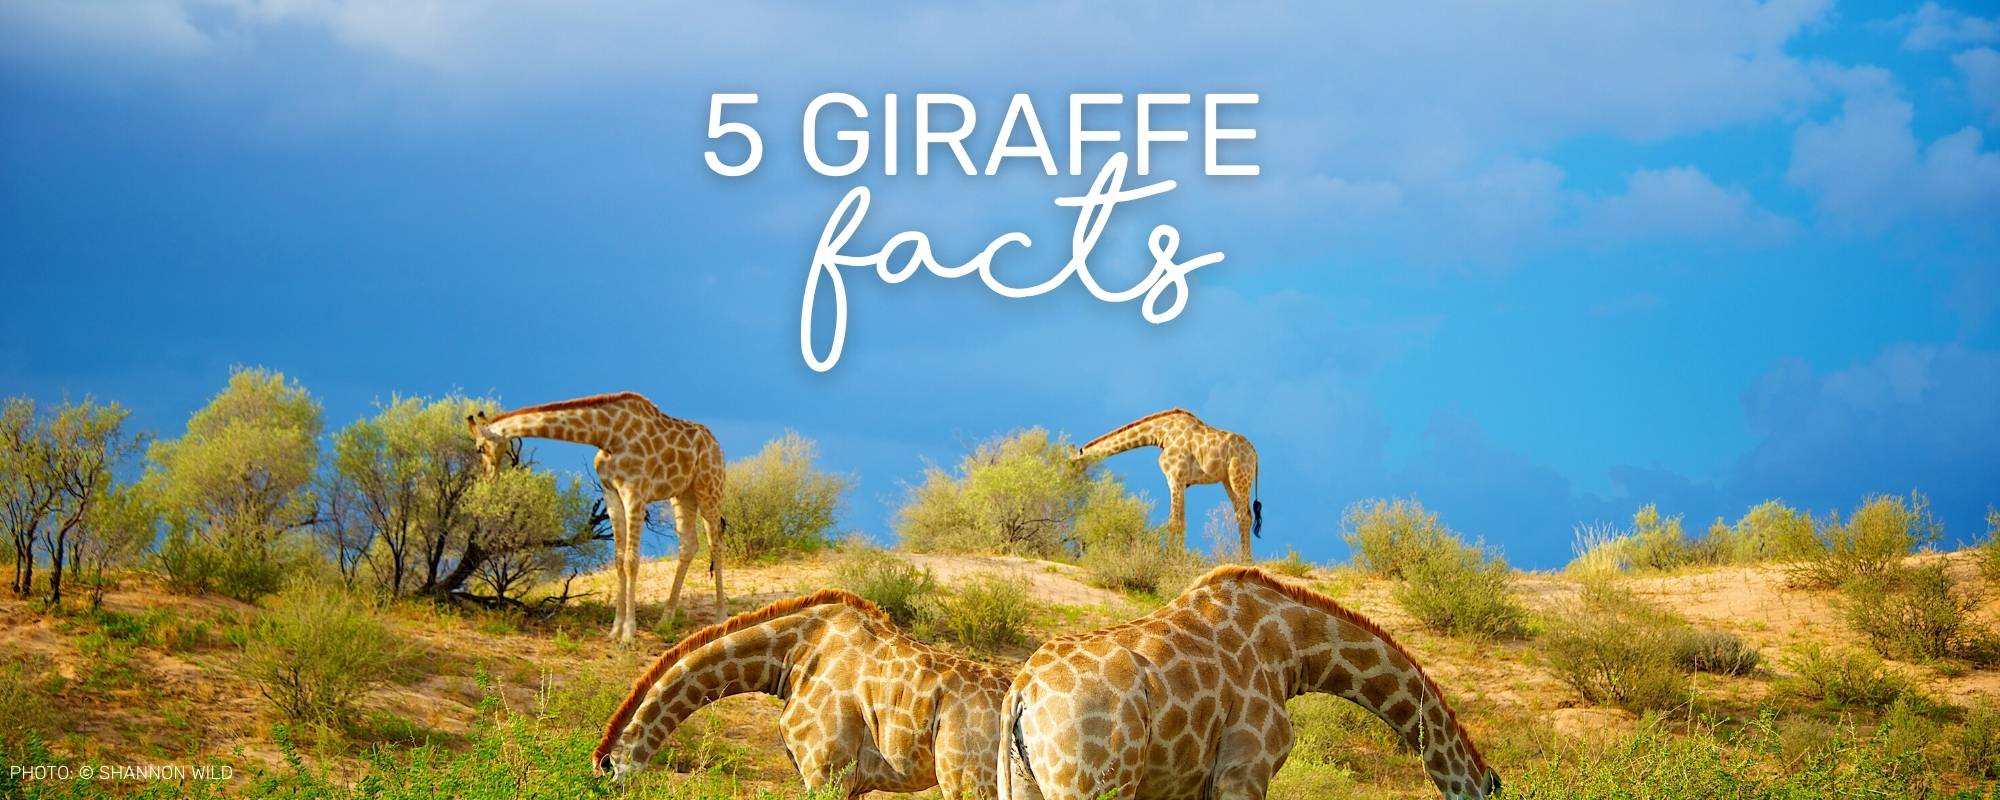 5 ASTOUNDING FACTS ABOUT GIRAFFES